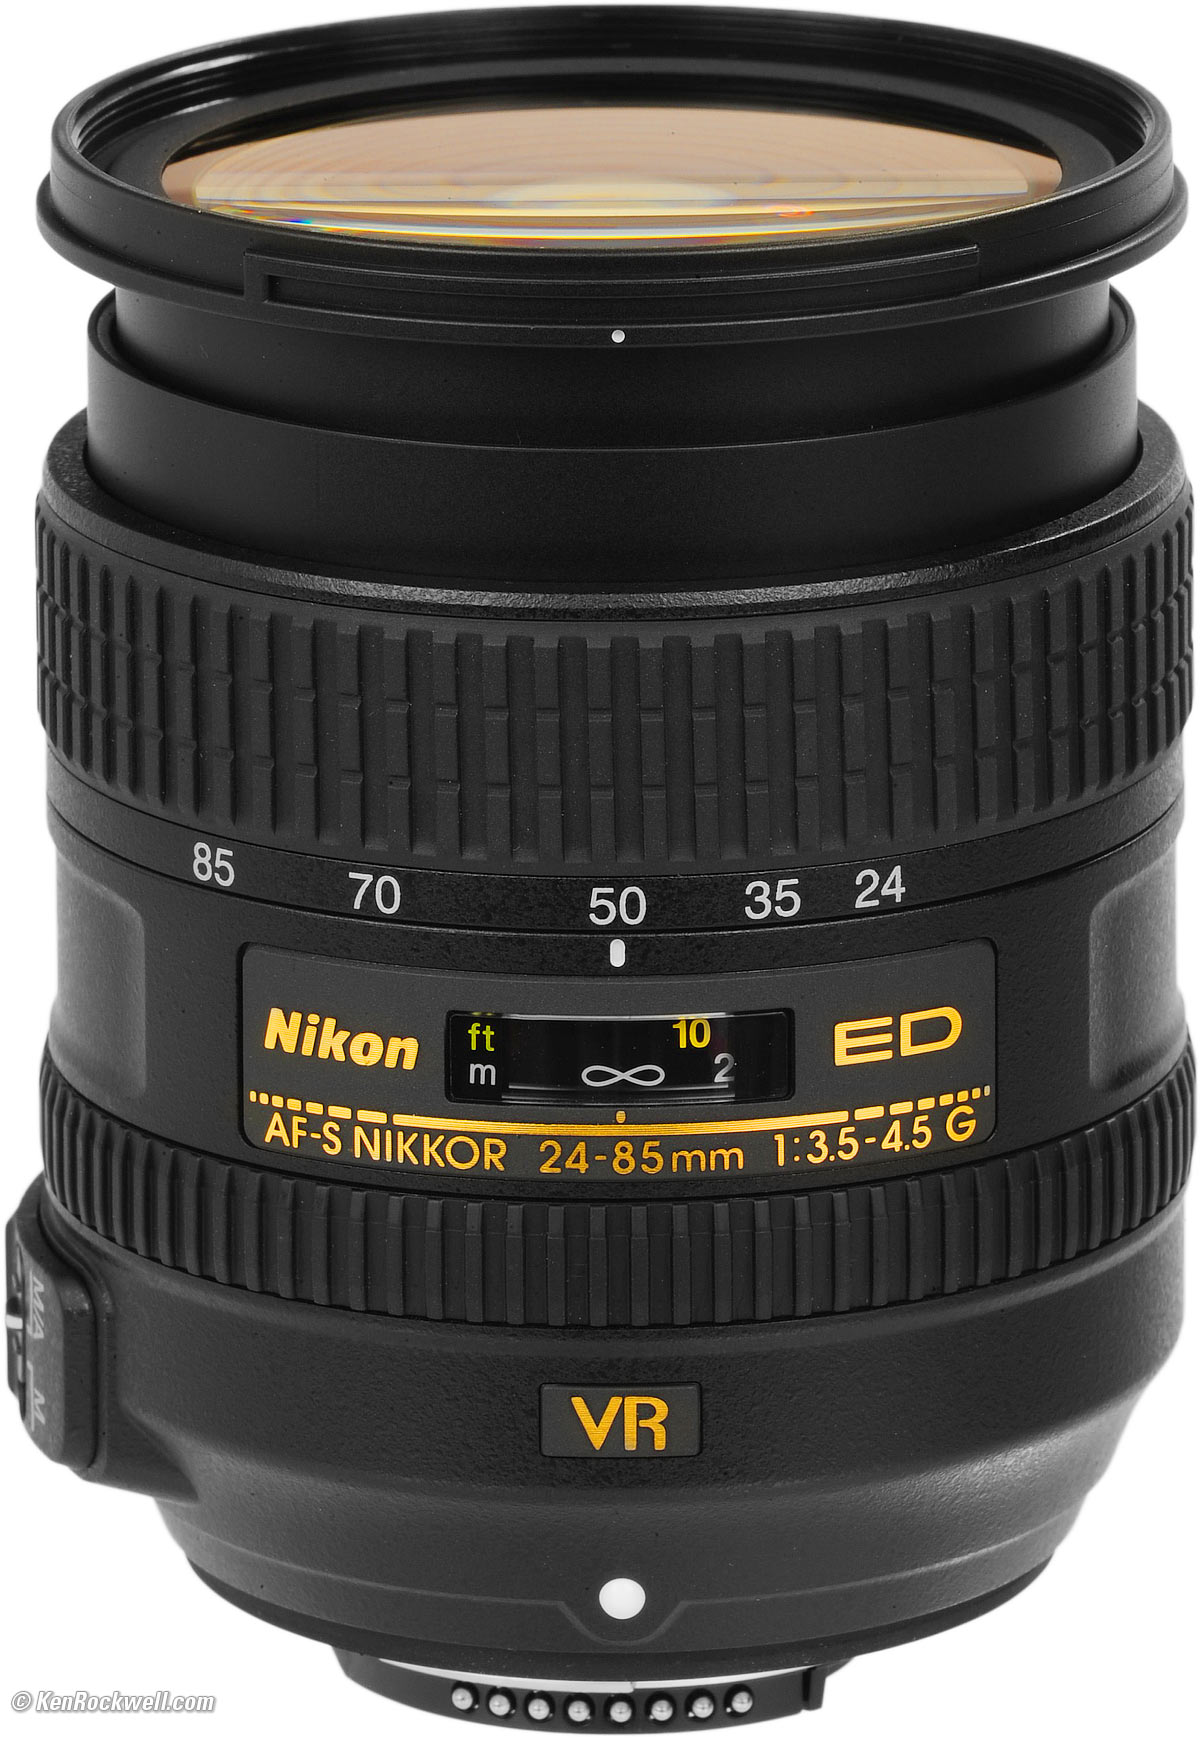 カメラ レンズ(ズーム) Nikon 24-85mm VR Review